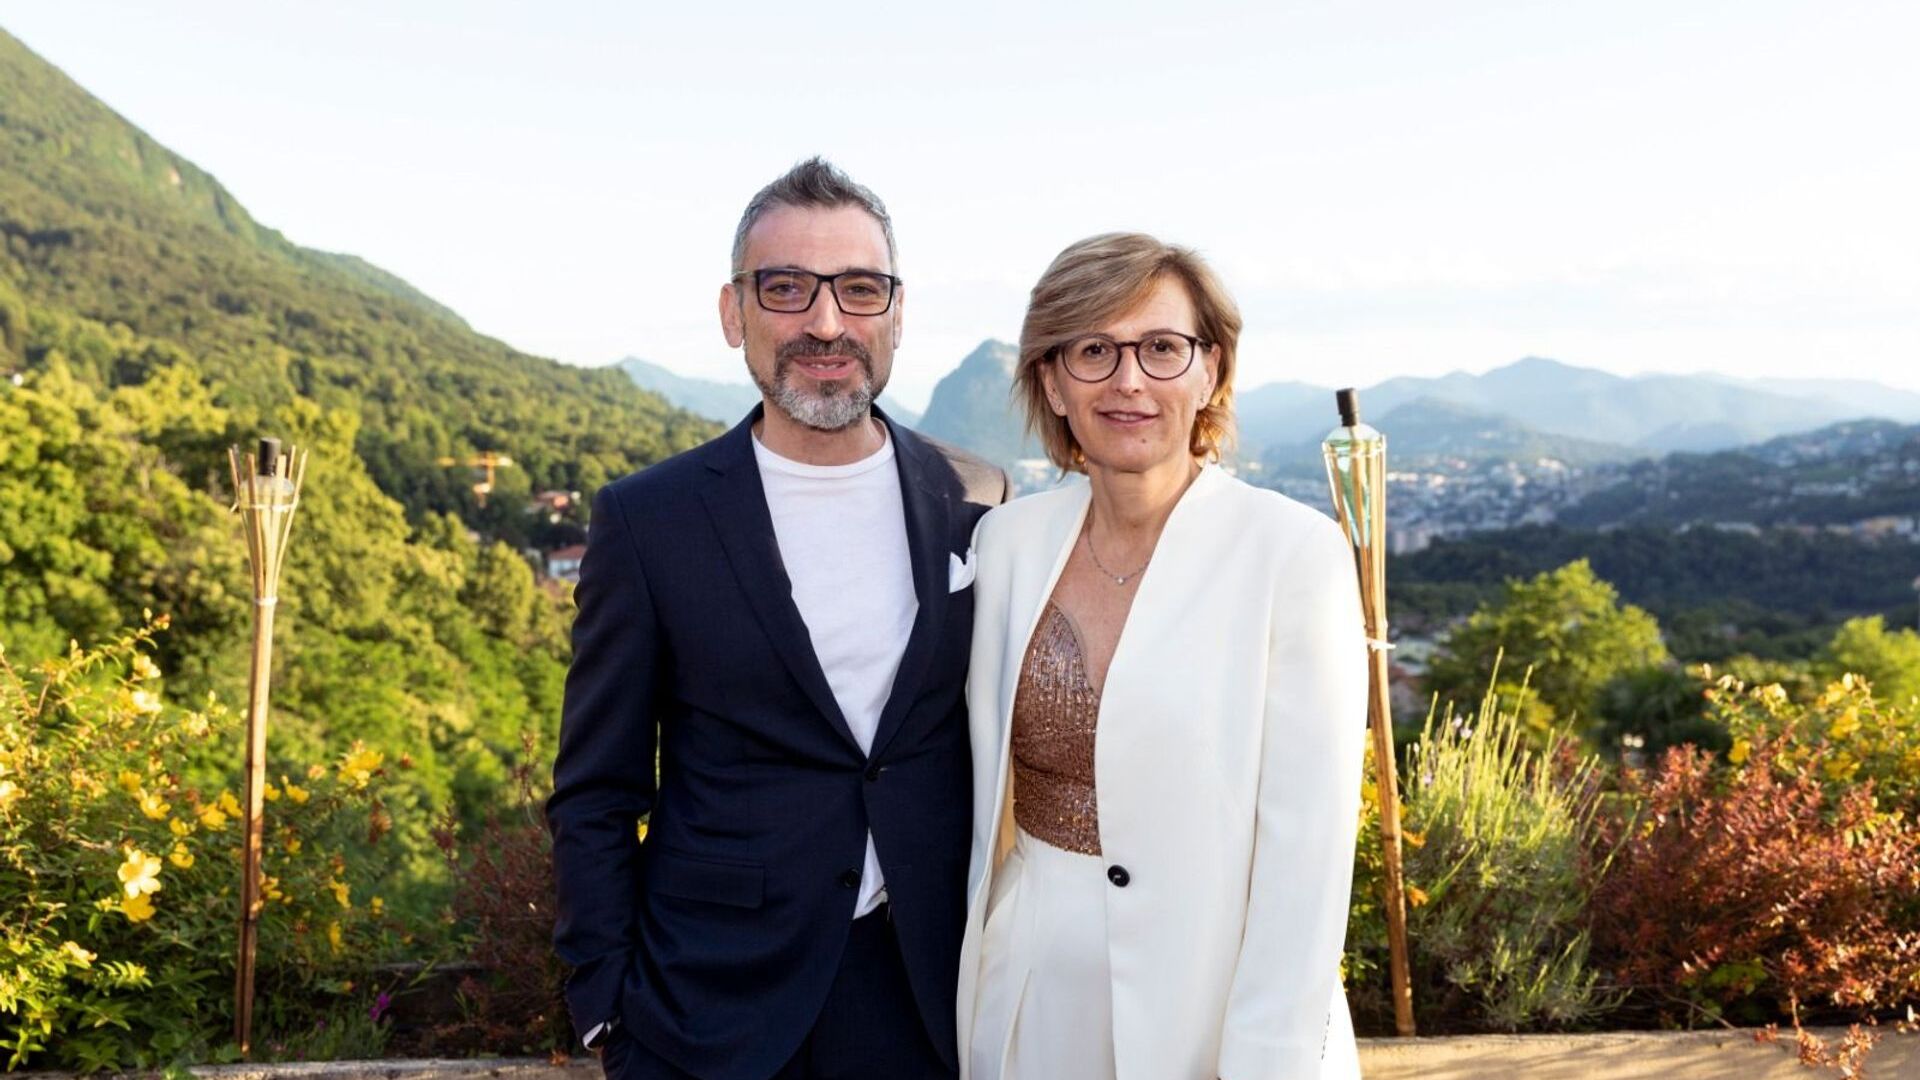 Η Cristina Giotto, Πρόεδρος, και ο Luca Mauriello, Αντιπρόεδρος, ενσαρκώνουν τη νέα ανώτατη διοίκηση της ated-ICT Ticino